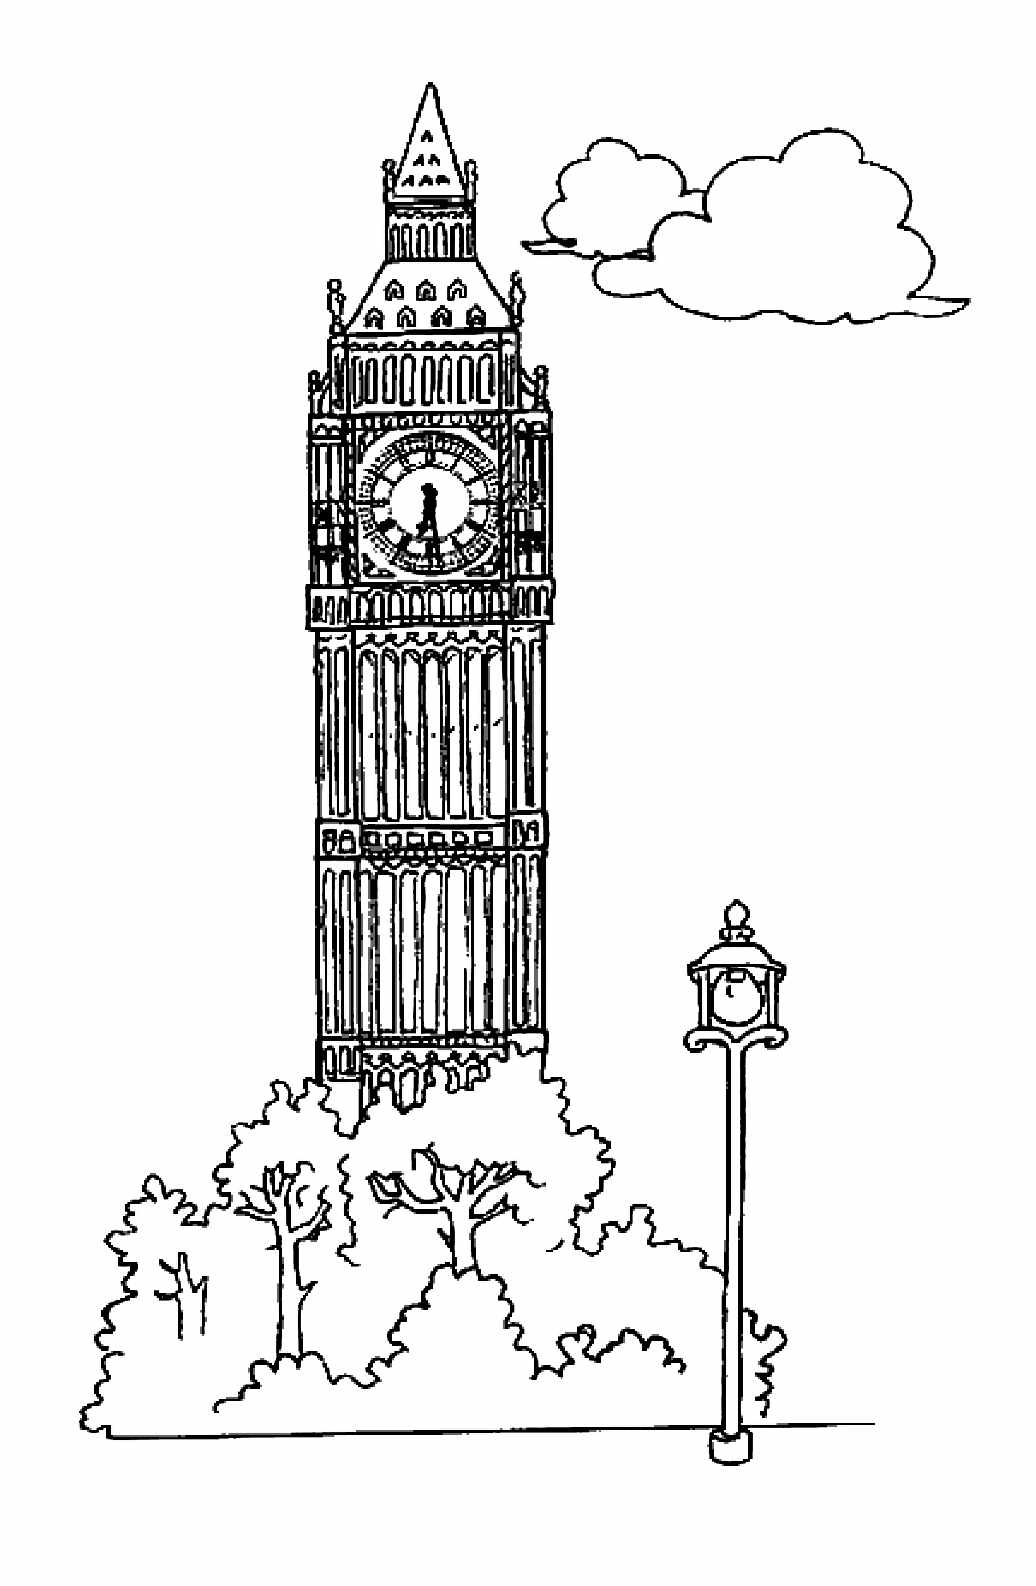 Descarregar e imprimir um desenho de um monumento para crianças: Big Ben (Londres)